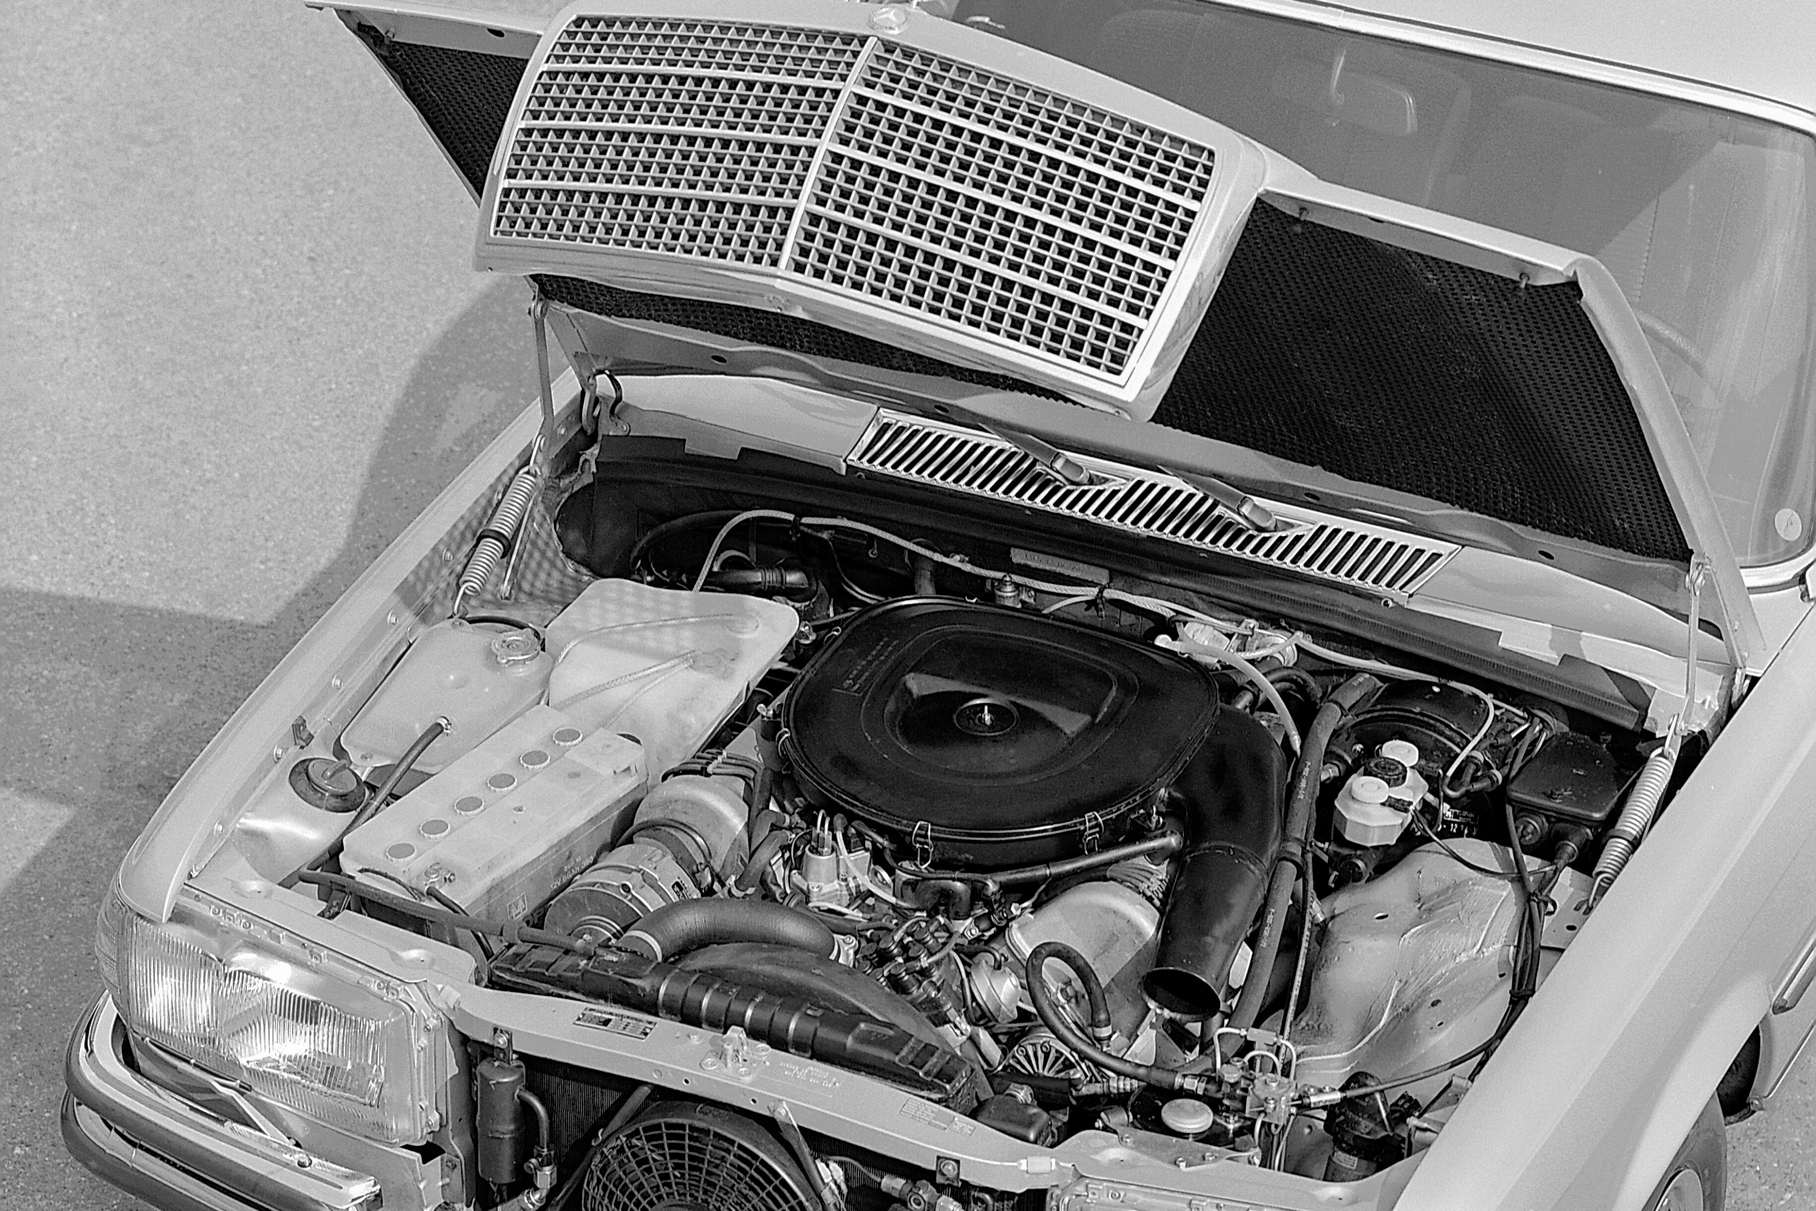 Чтобы уместить громадный двигатель под низкий капот нового седана, конструкторам пришлось применить систему смазки с сухим картером, как на гоночных моторах.